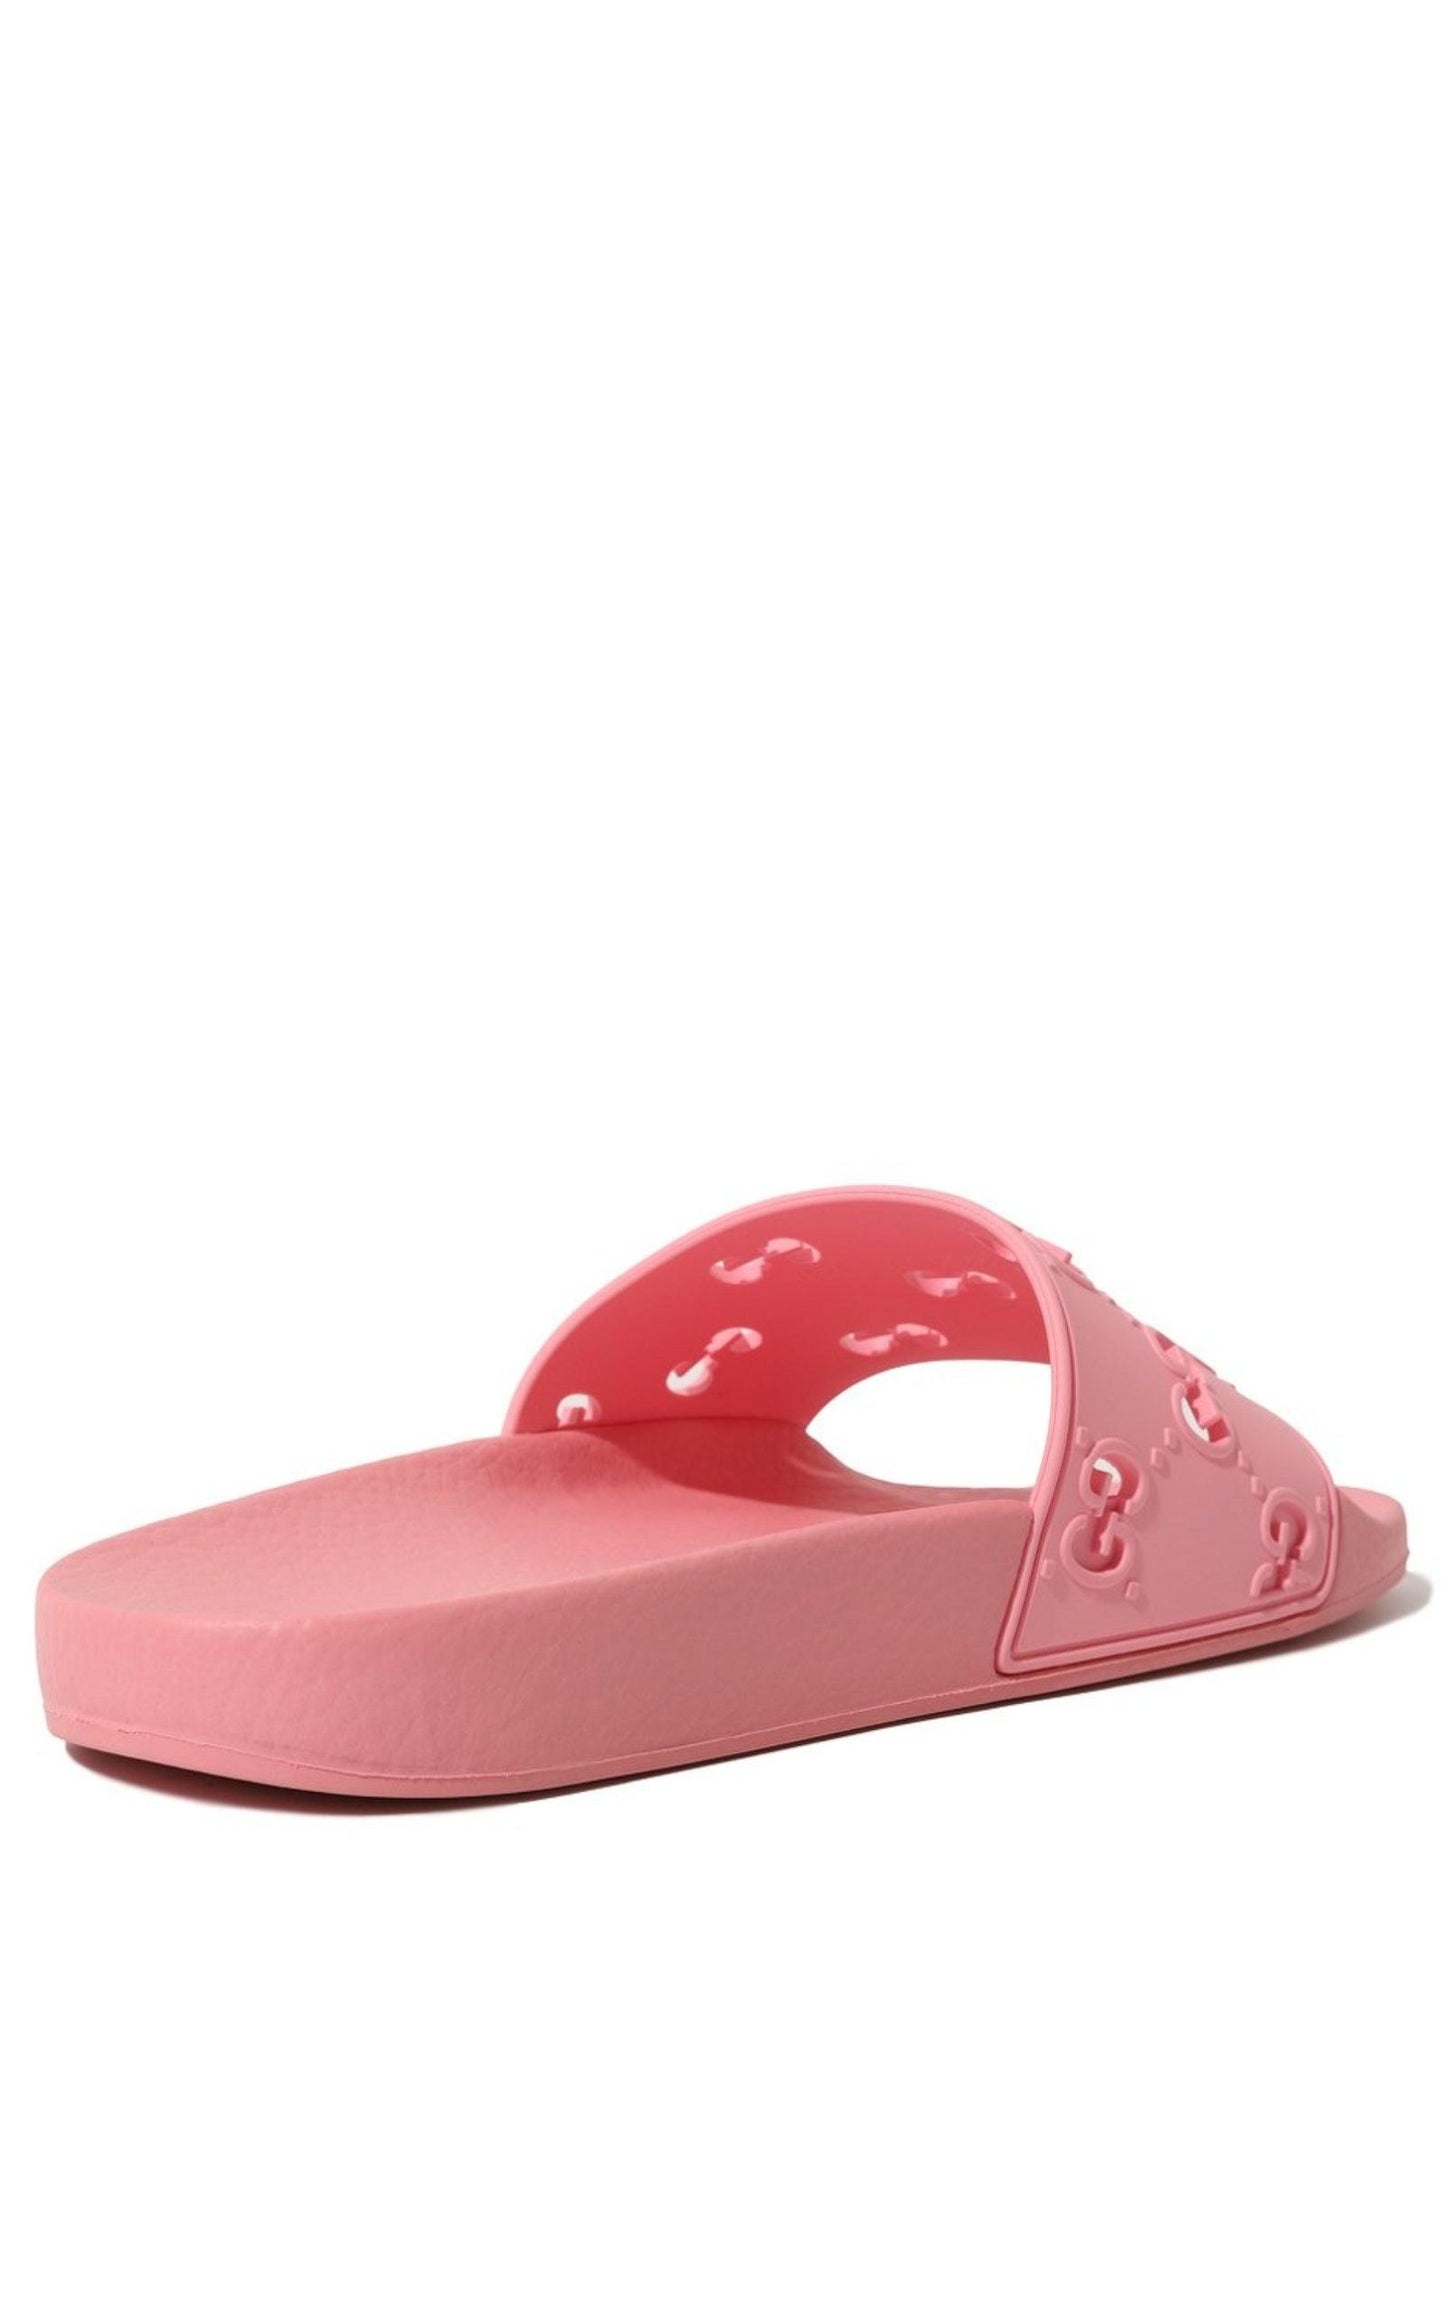 Rose GG Slide Sandal-Slides-Gucci-IT 40-Rose-Rubber-Runway Catalog